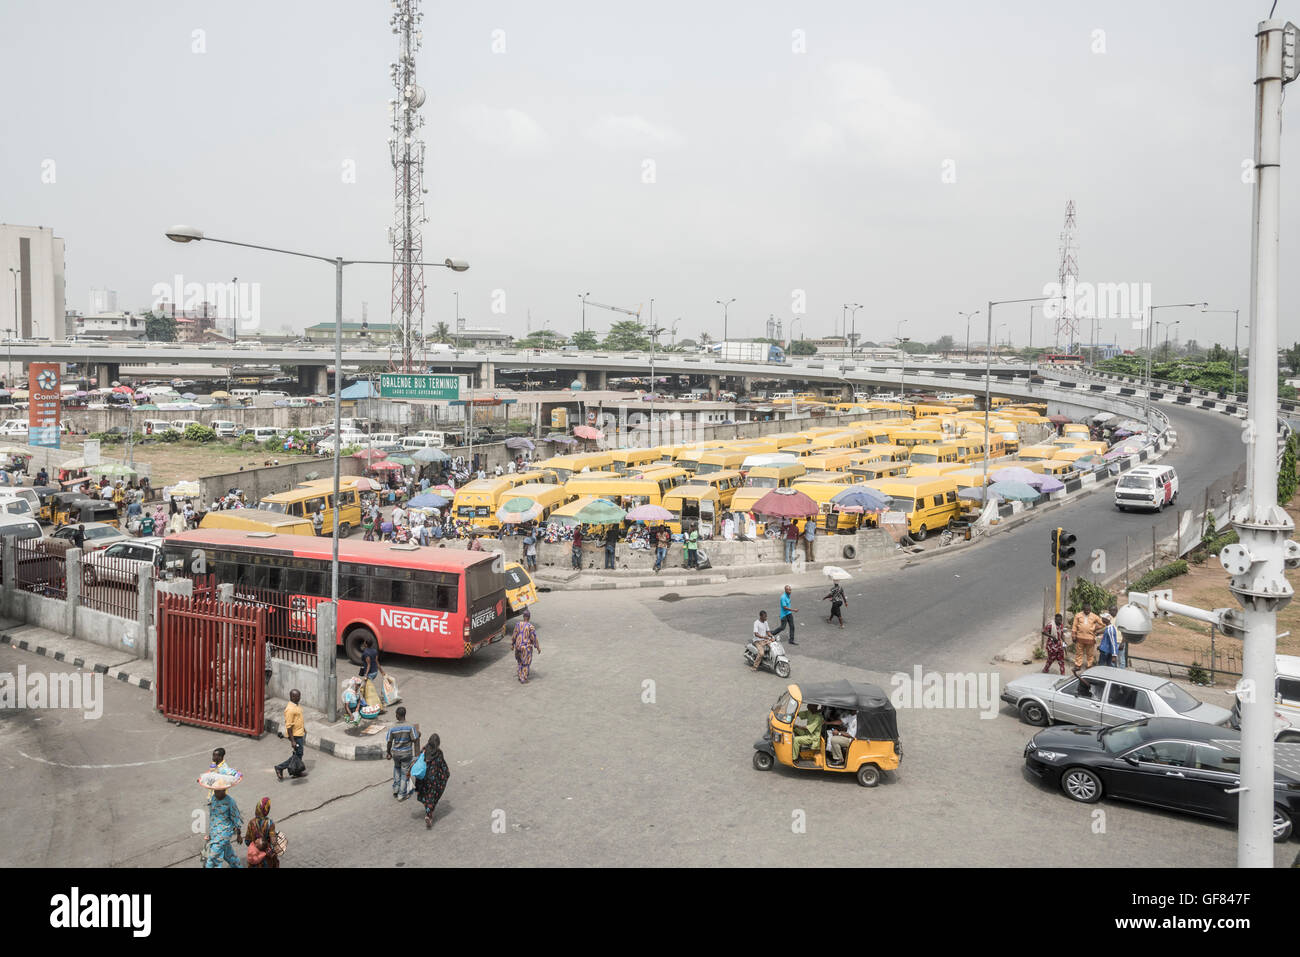 Obalende Bus Terminal, Lagos Island, Lagos, Nigeria Foto Stock